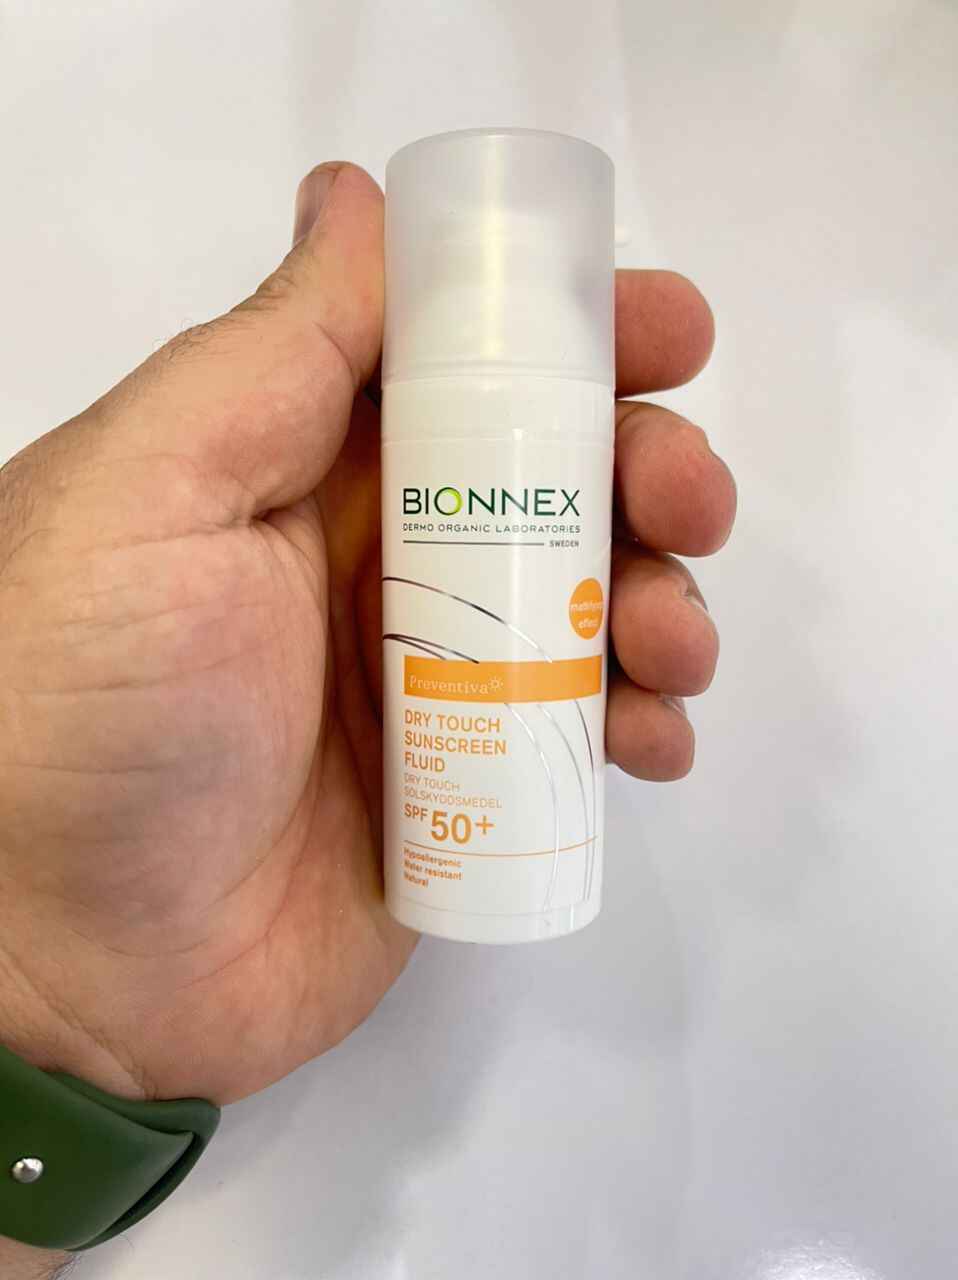 ضد آفتاب فلوئیدی بایونکس bionnex سری preventina | مناسب پوست چرب +SPF 50